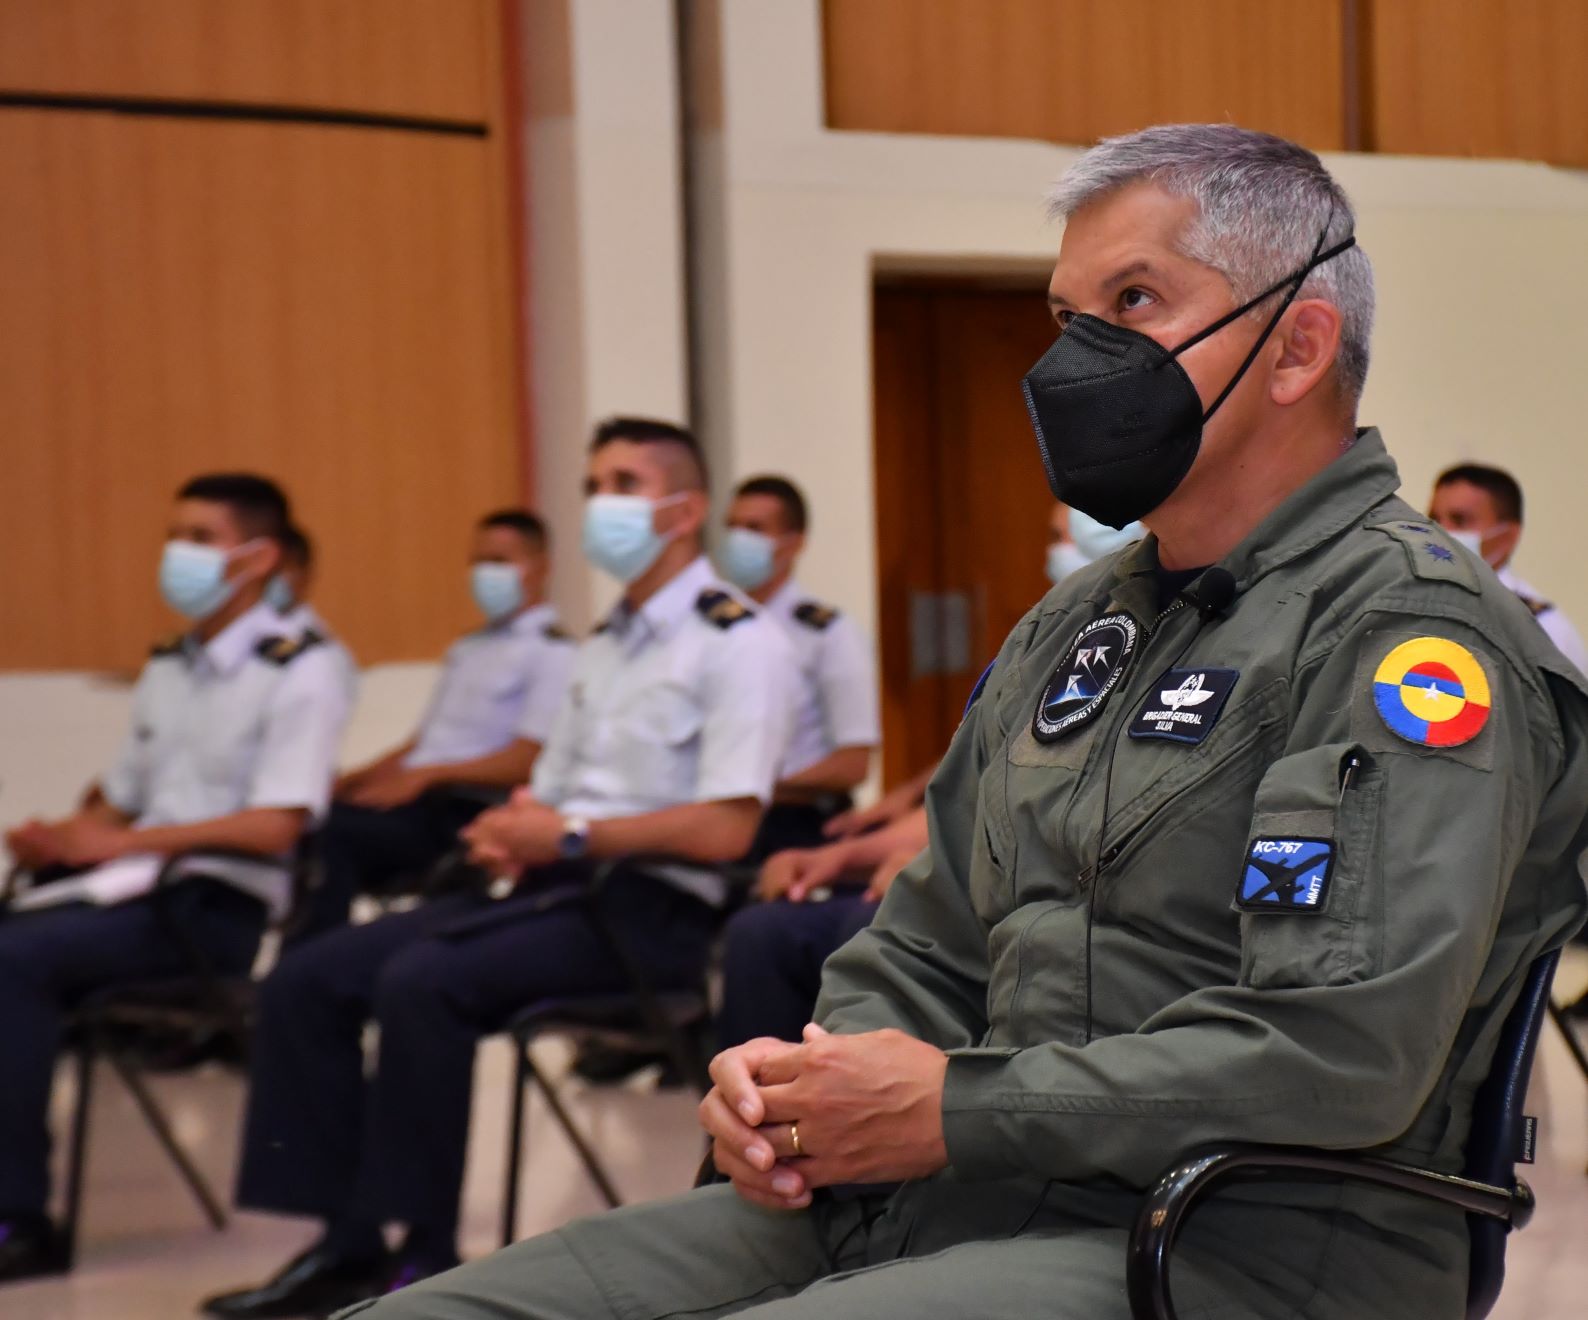 La Escuela Militar de Aviación “Marco Fidel Suárez” prepara a los Alféreces y Cadetes de cara a ser los futuros Oficiales de la Fuerza Aérea Colombiana